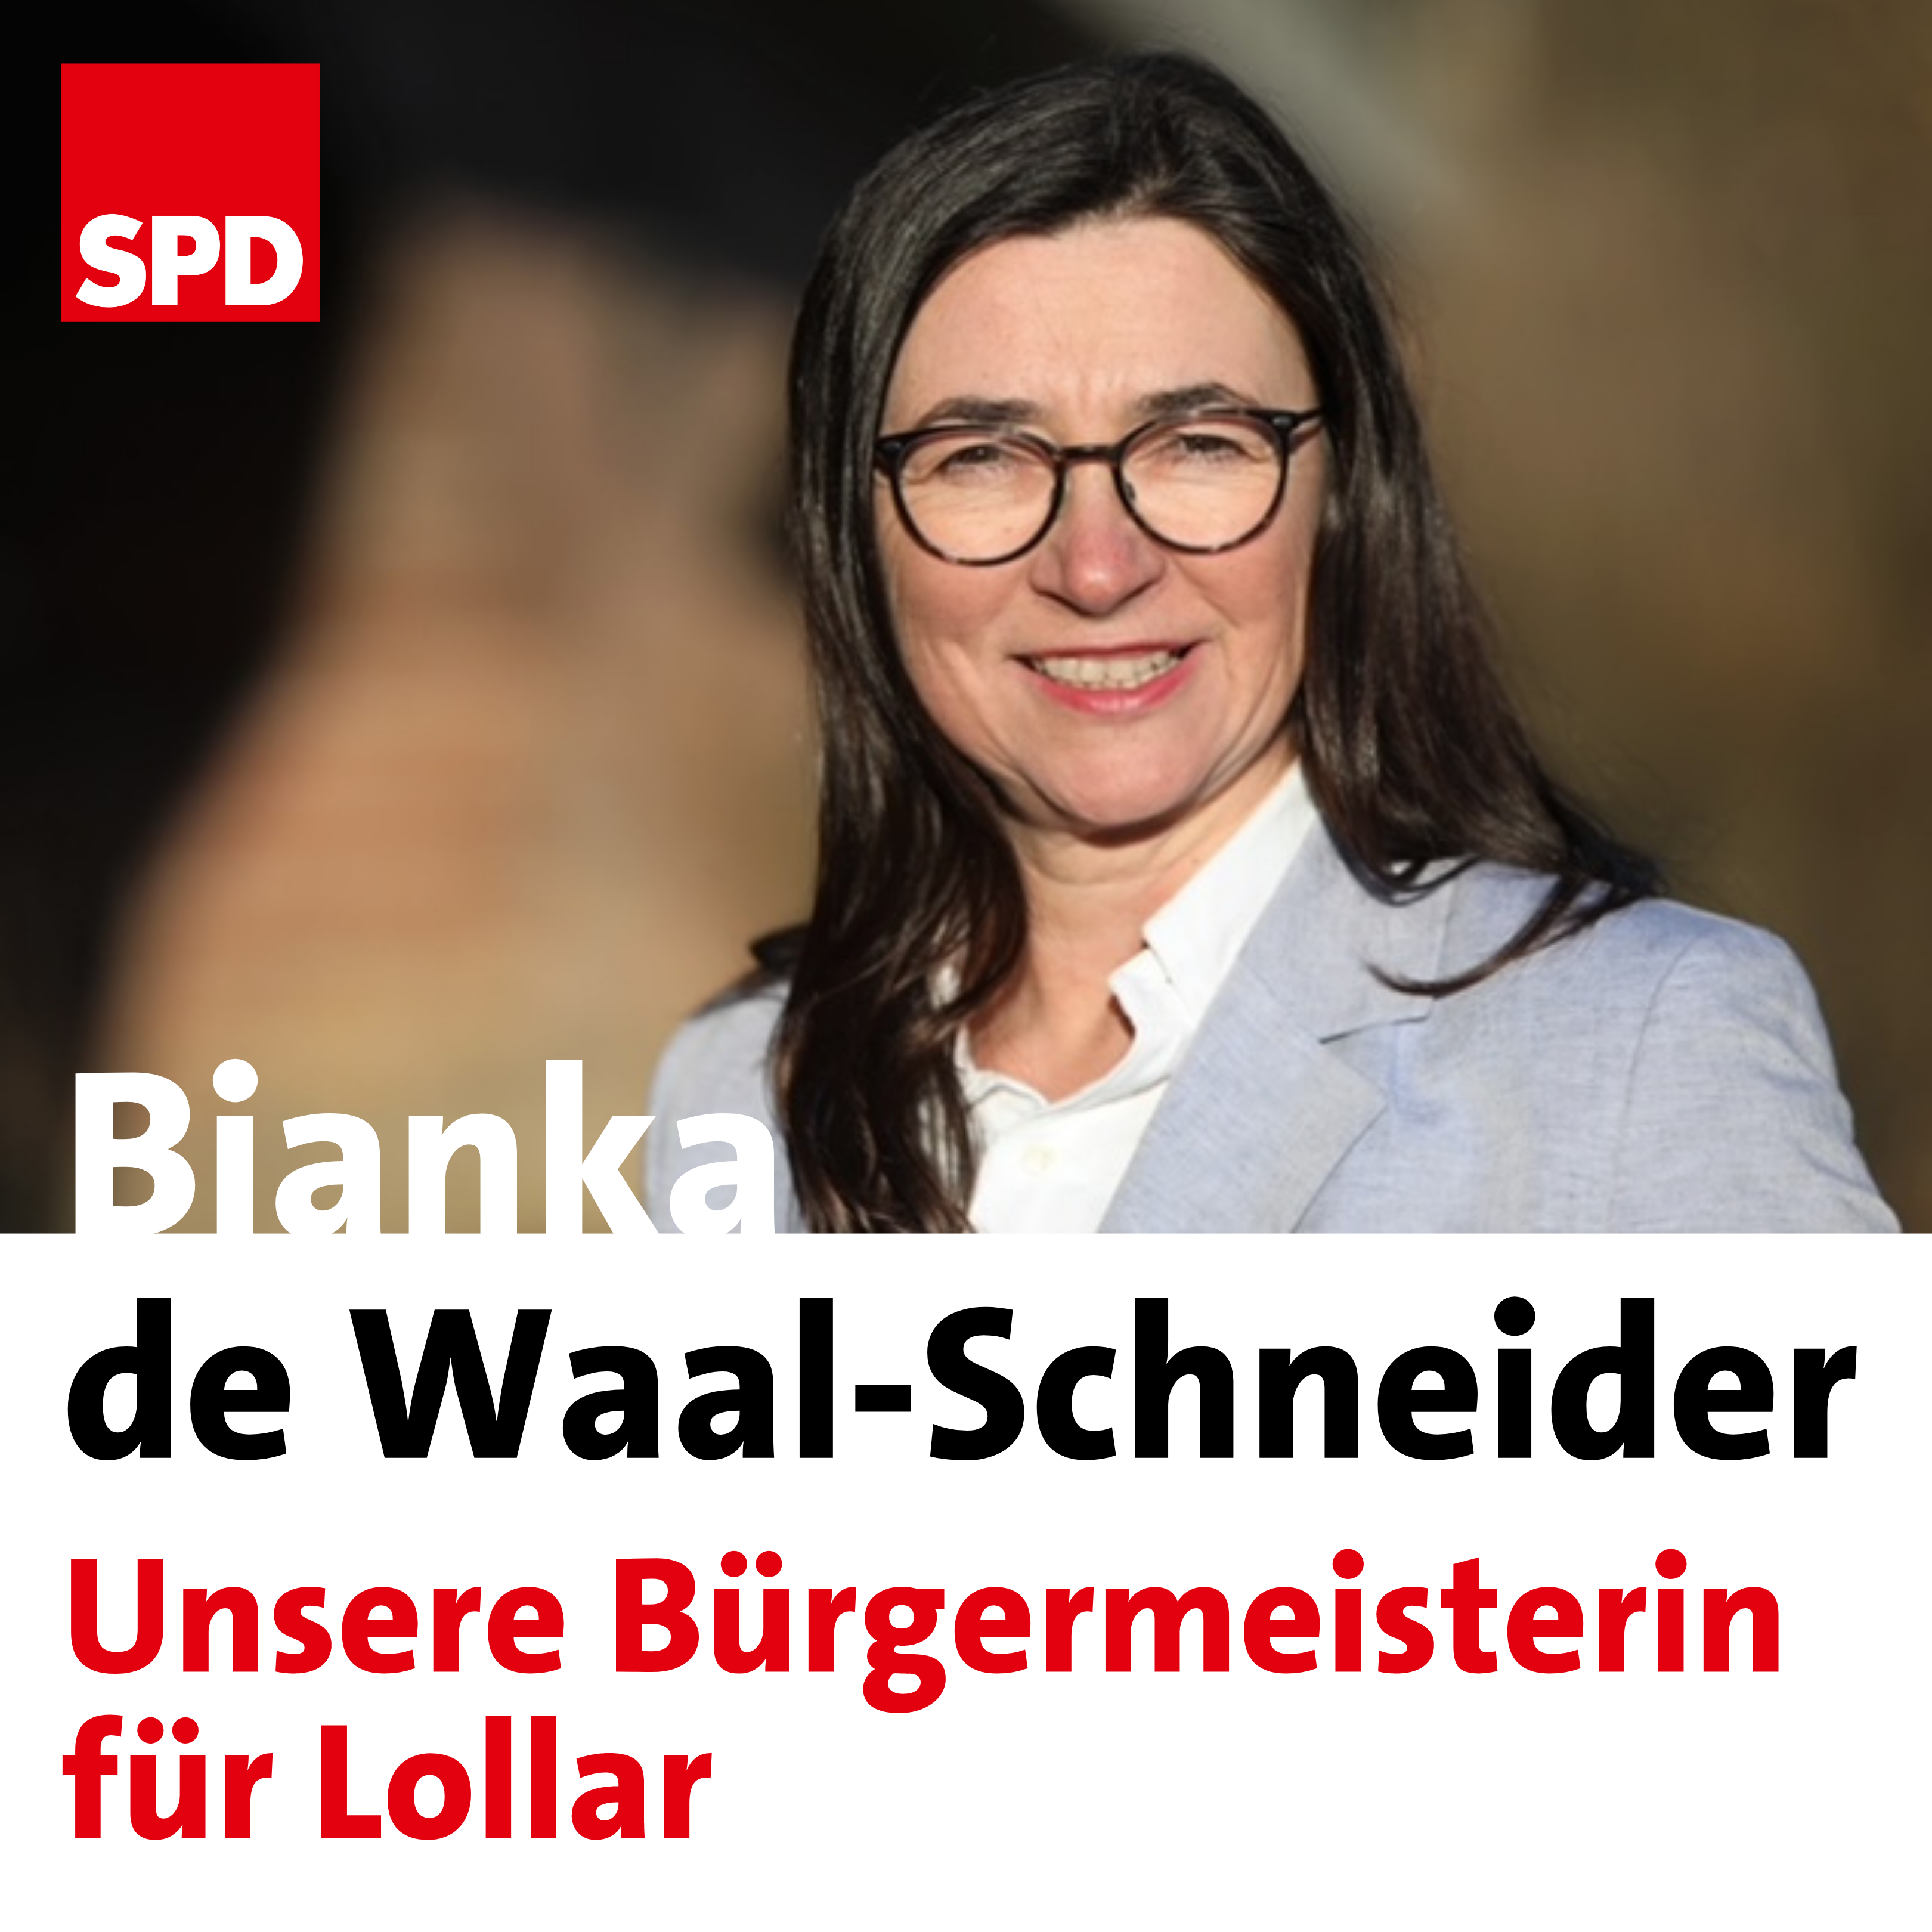 Foto von Bianka de Waal-Schneider mit Schrftzug Bianka de Waal-Schneider - Unsere Büergermeisterin für Lollar